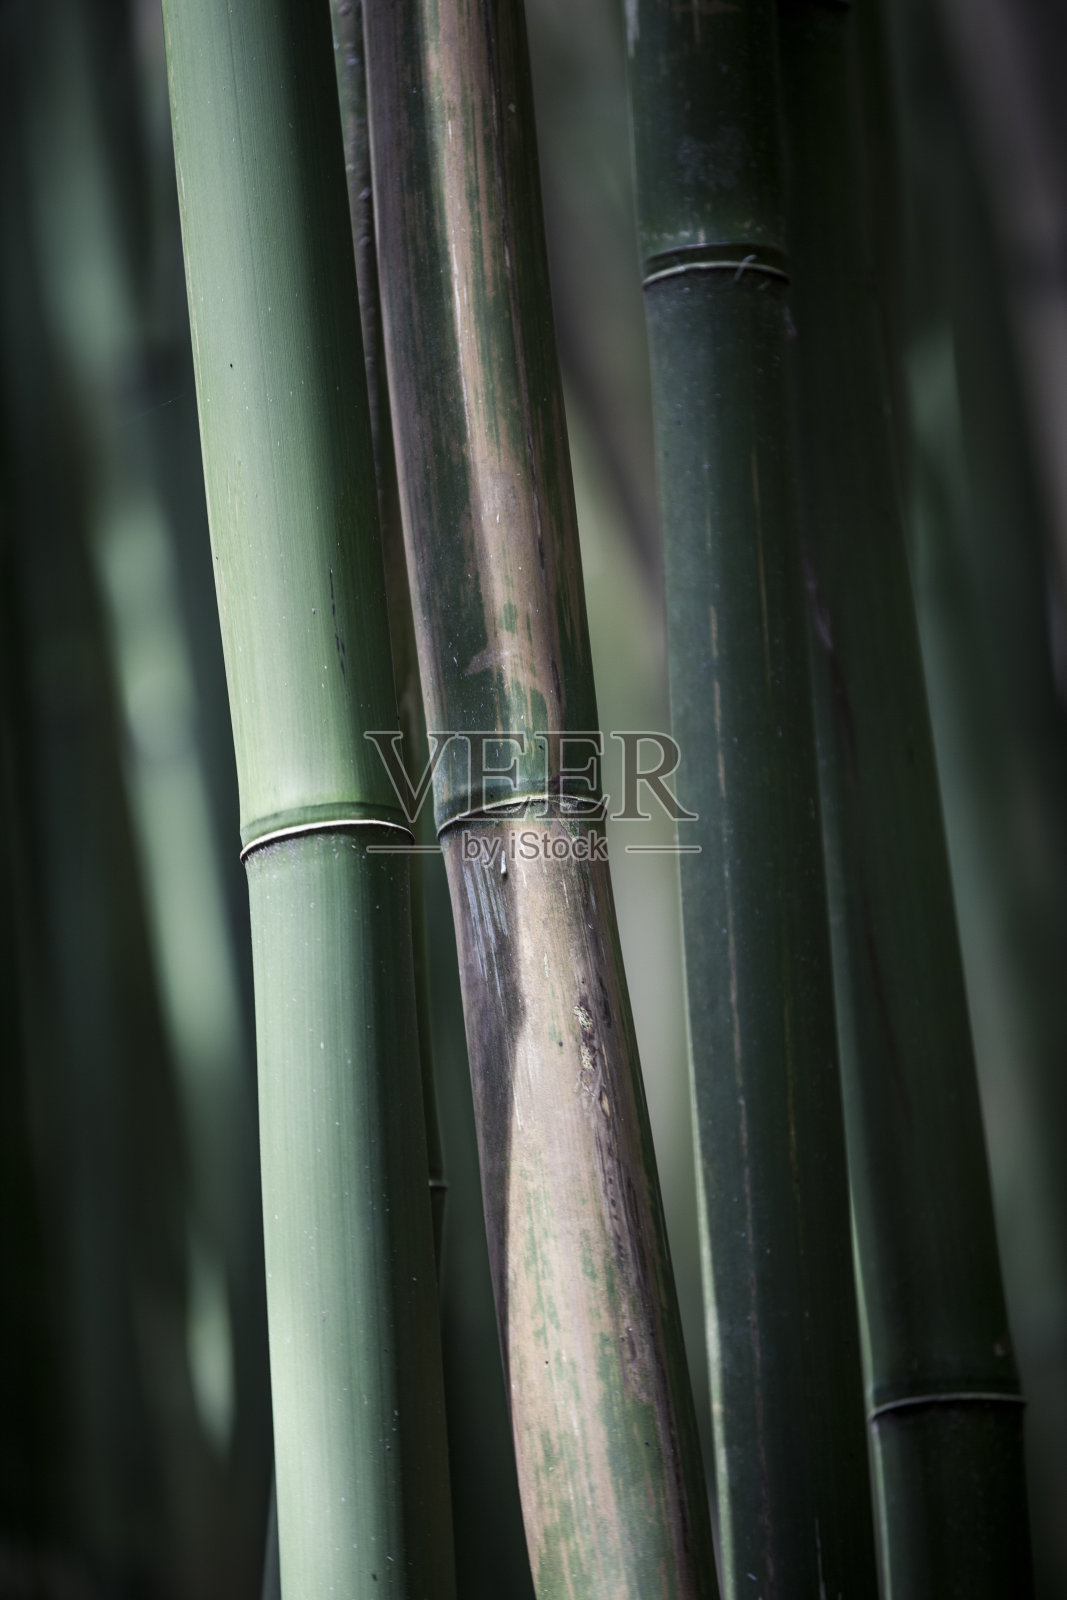 竹子的背景照片摄影图片